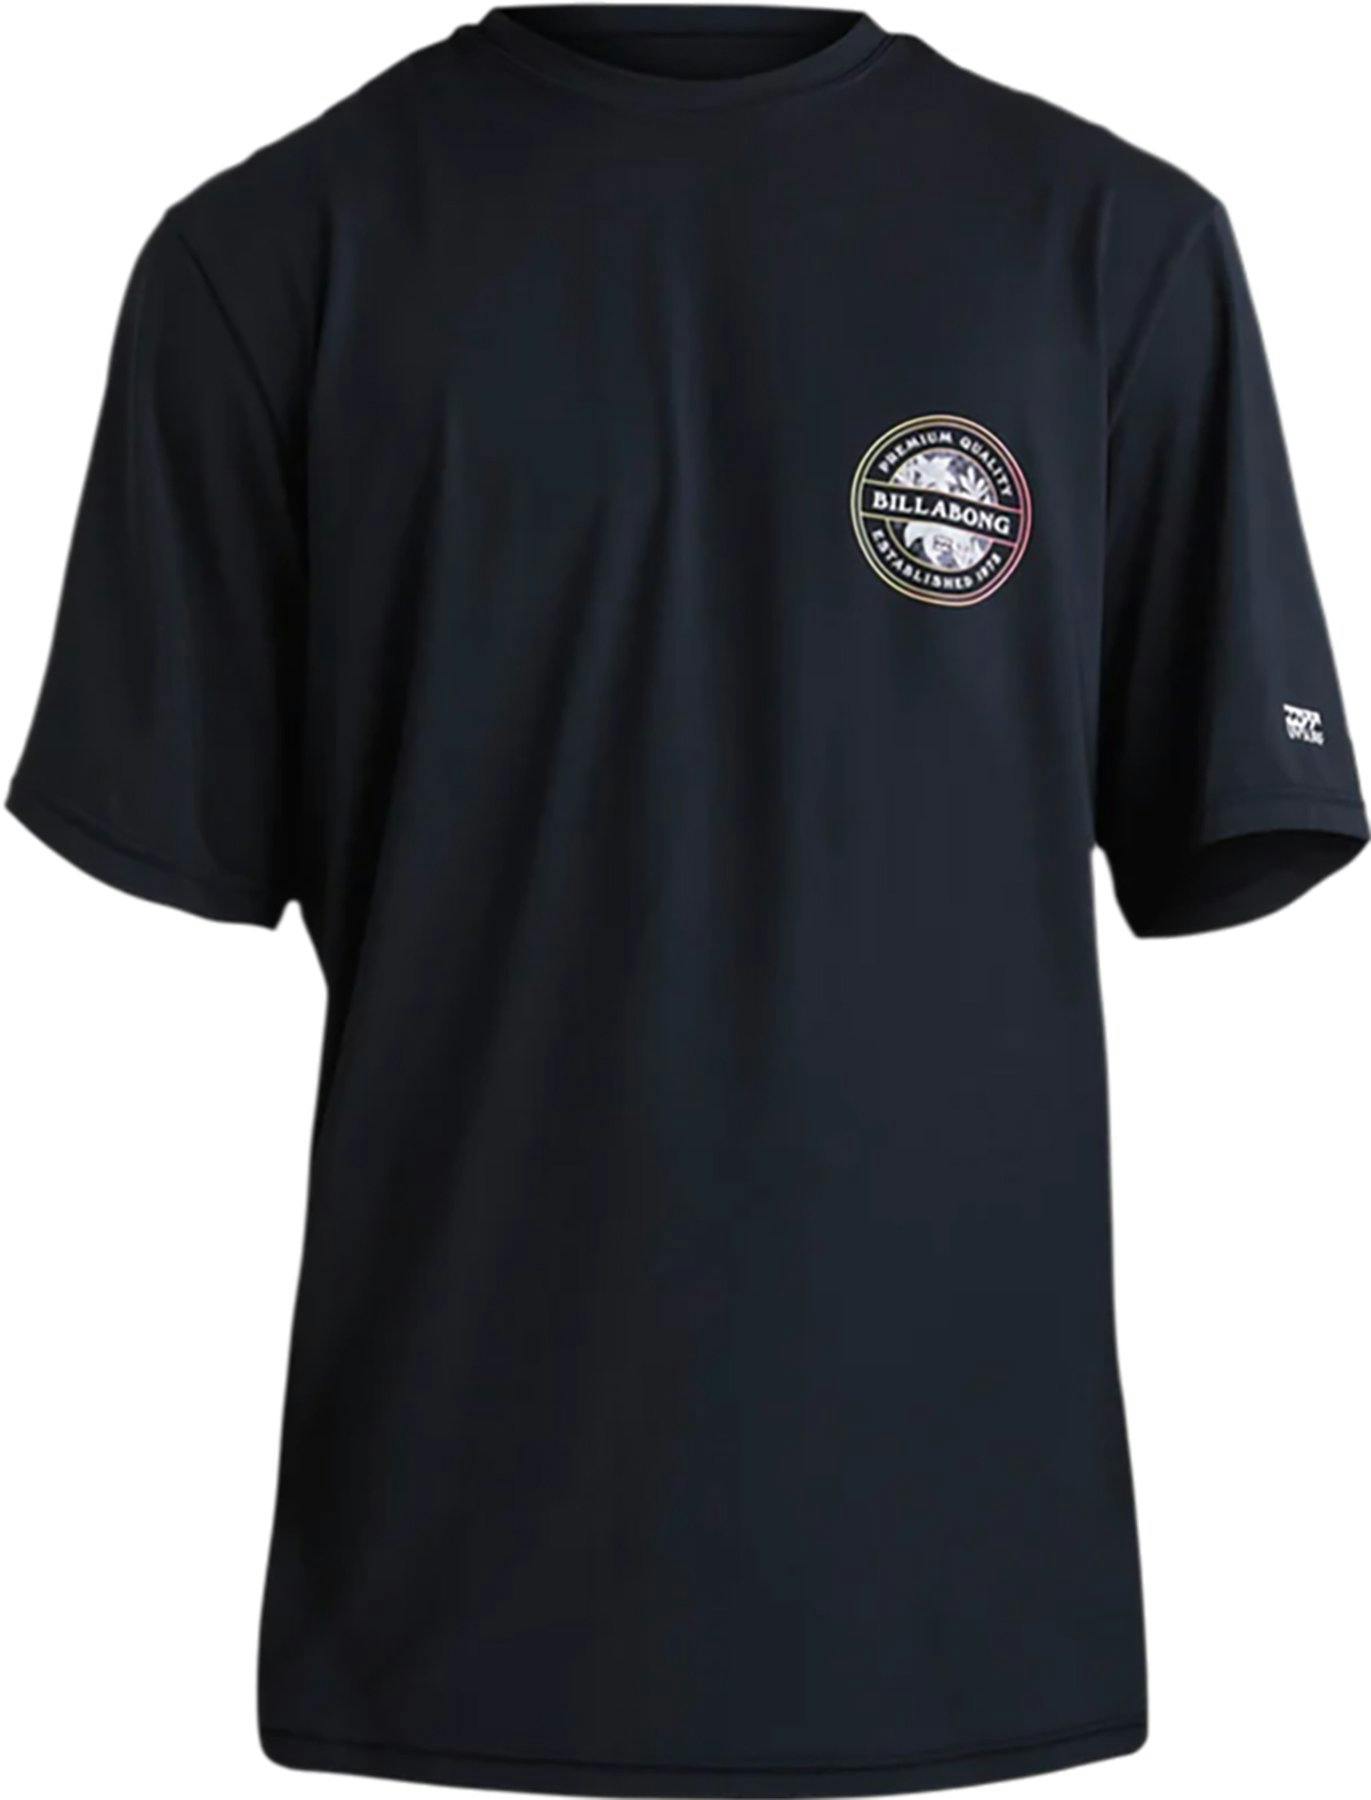 Image de produit pour T-shirt de surf à manches courtes coupe ample Rotor - Garçon